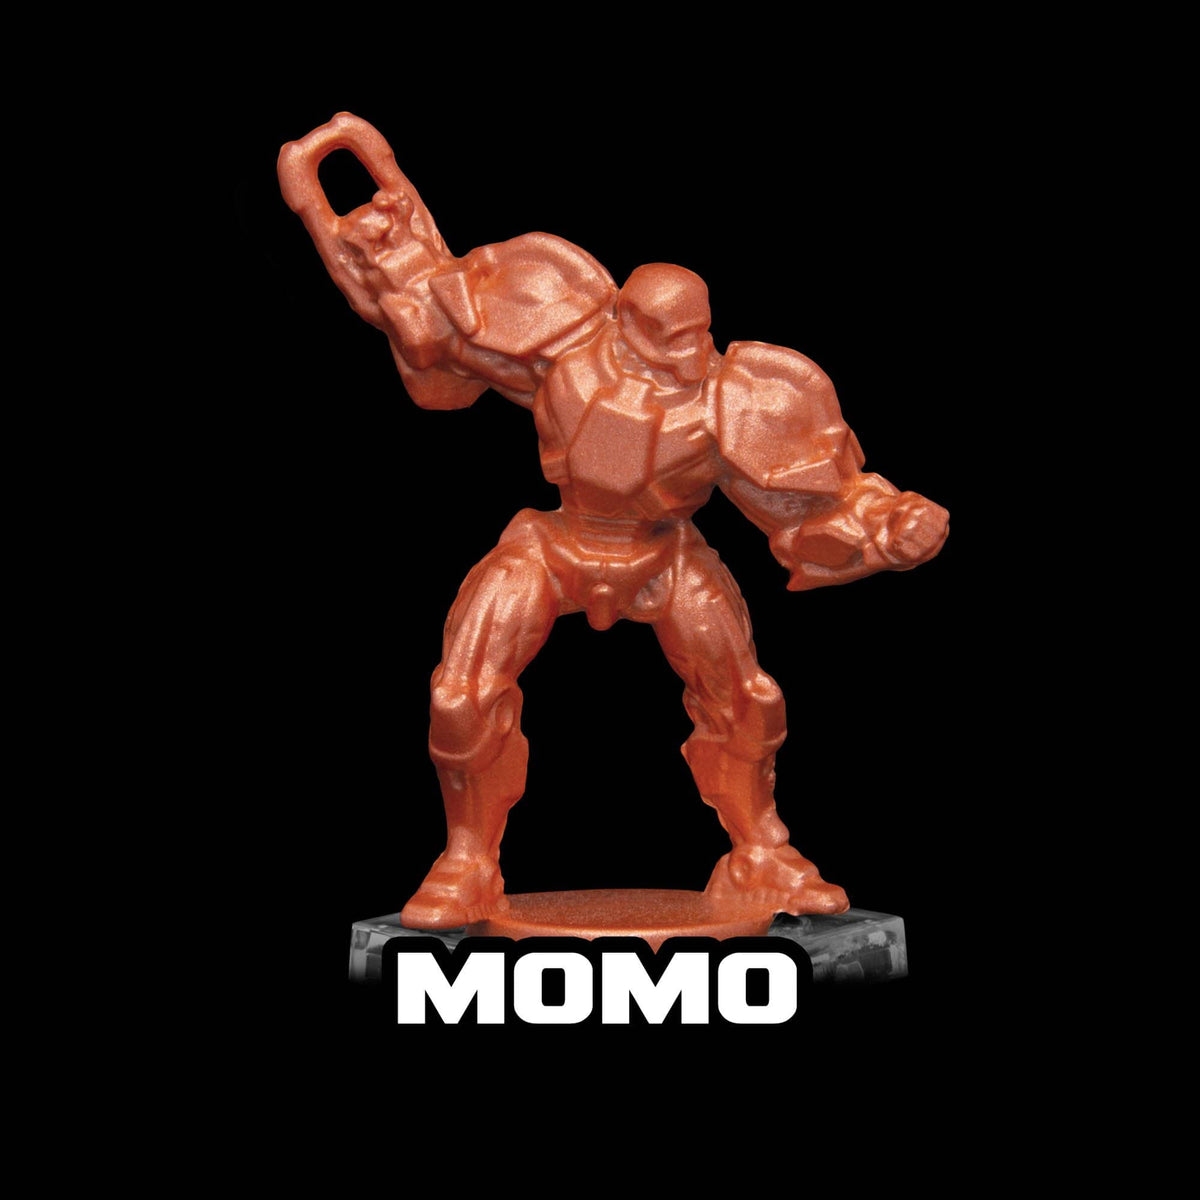 Momo Metallic Acrylic Paint Metallic Turbo Dork Exit 23 Games Momo Metallic Acrylic Paint